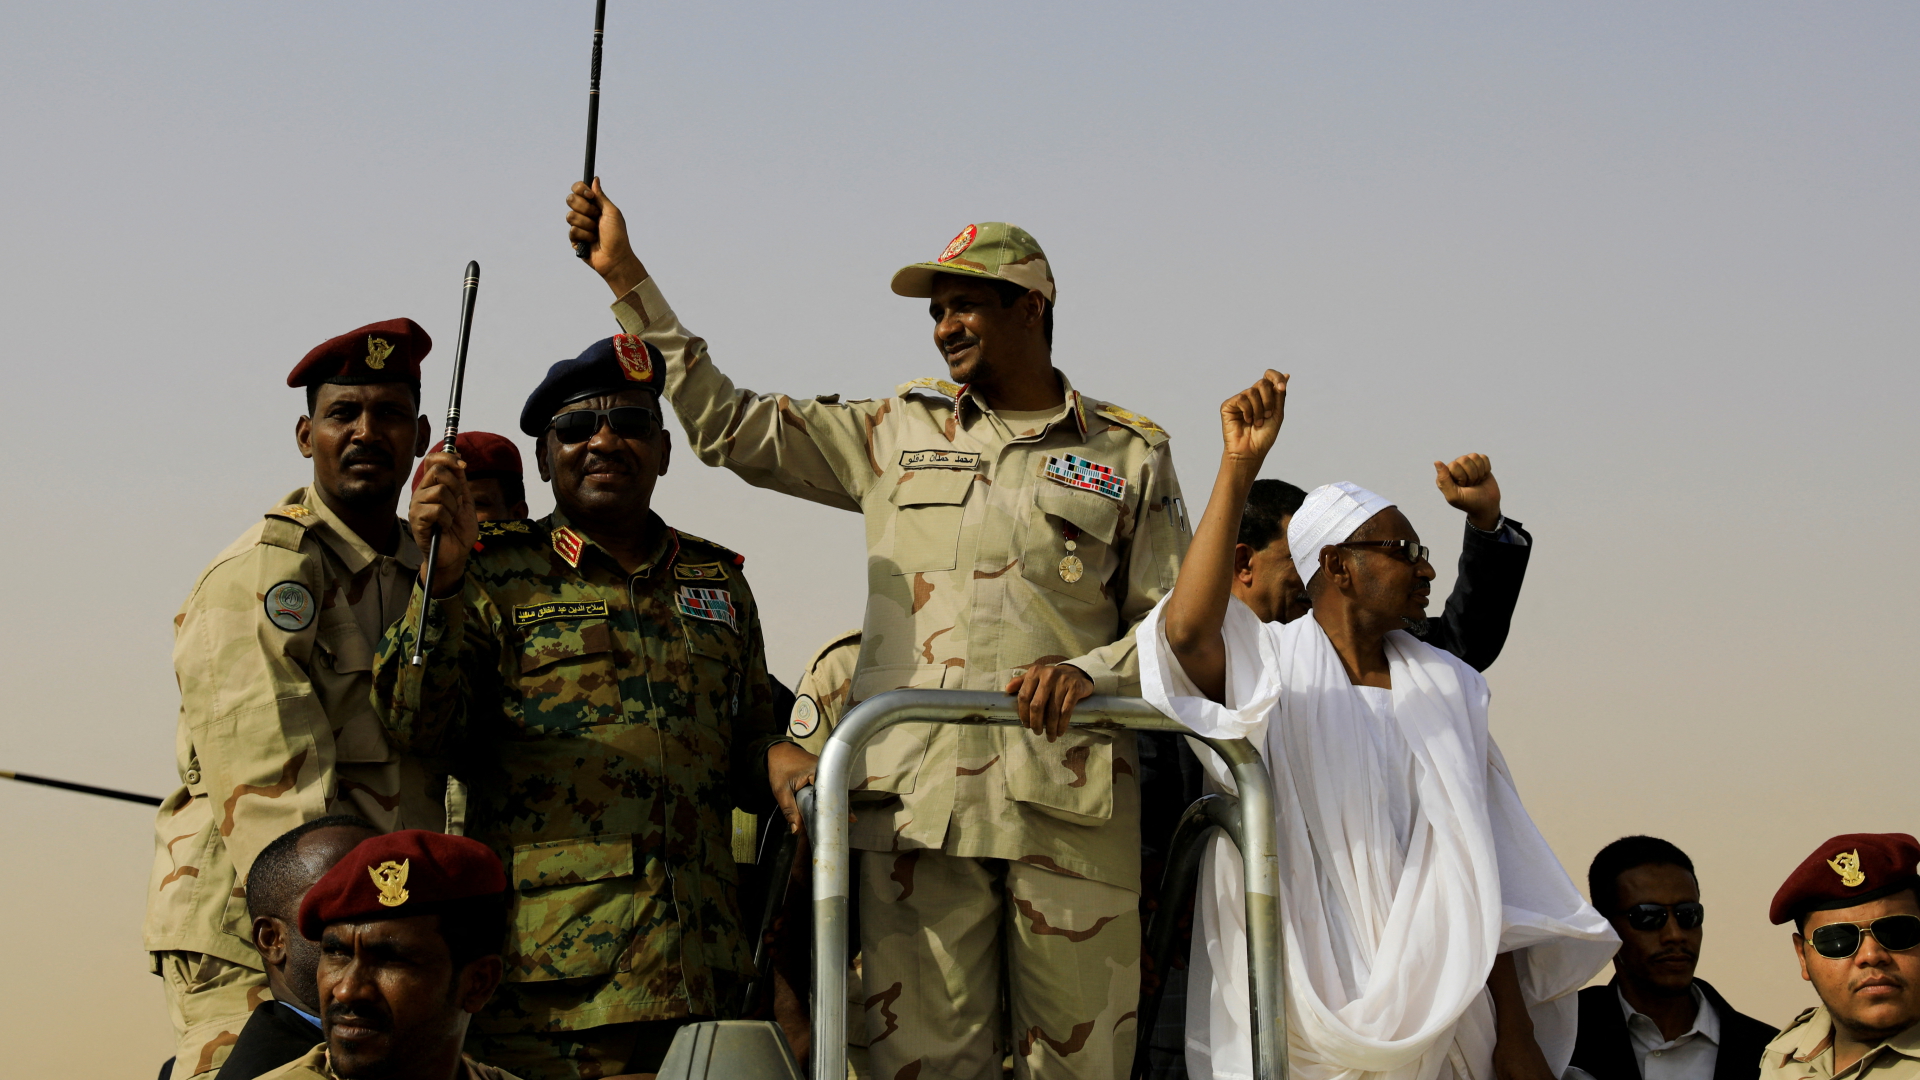 Warum der Konflikt im Sudan eskalierte